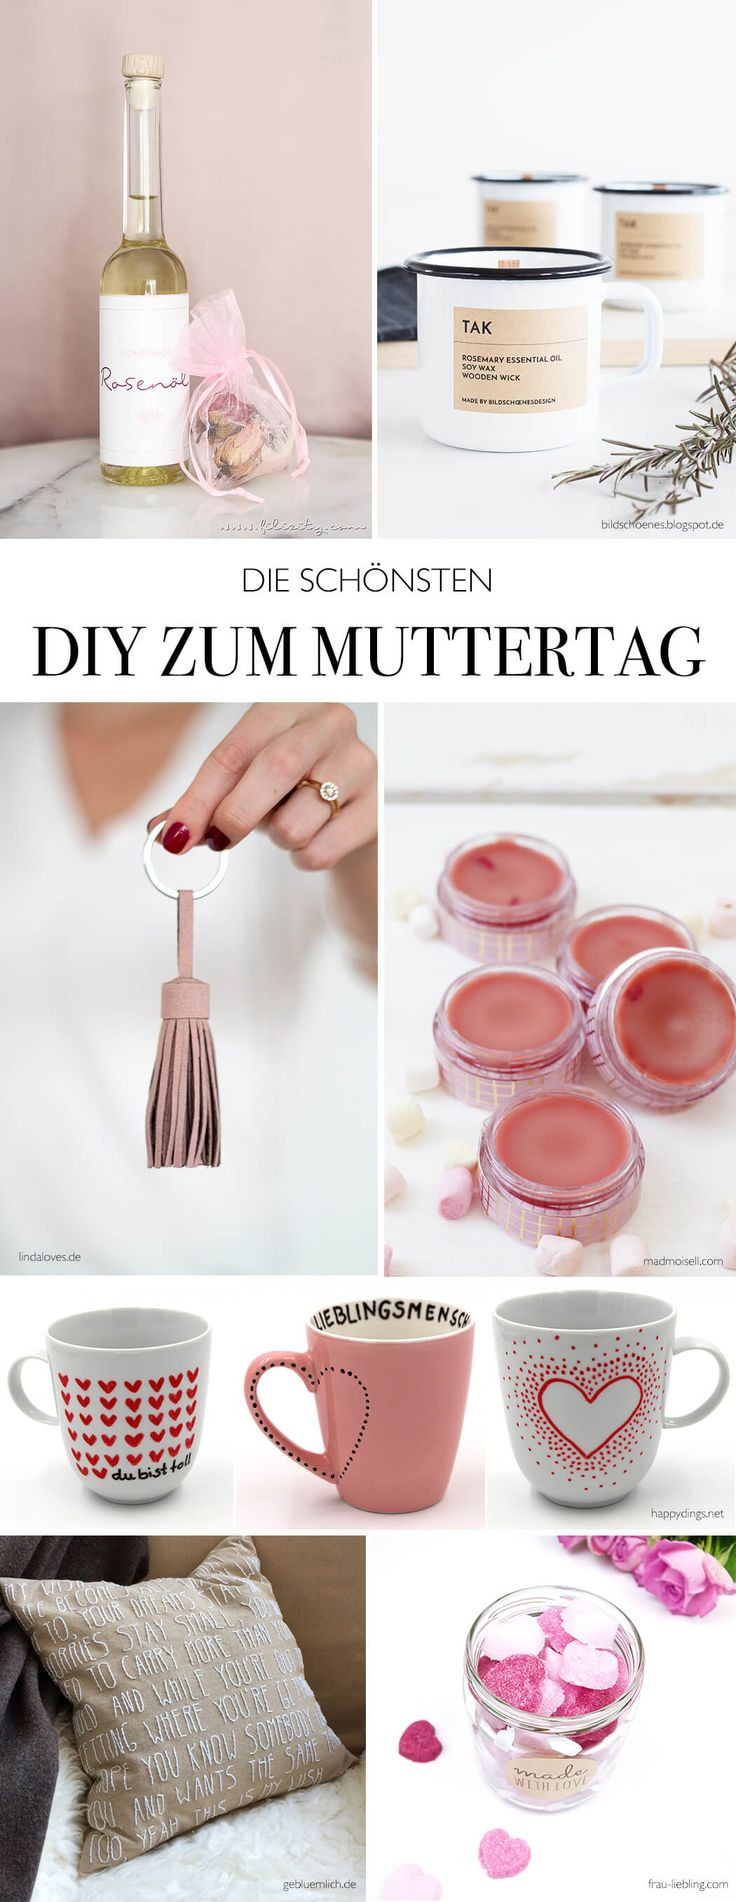 Geschenke Diy
 25 best ideas about Basteln Zum Muttertag auf Pinterest